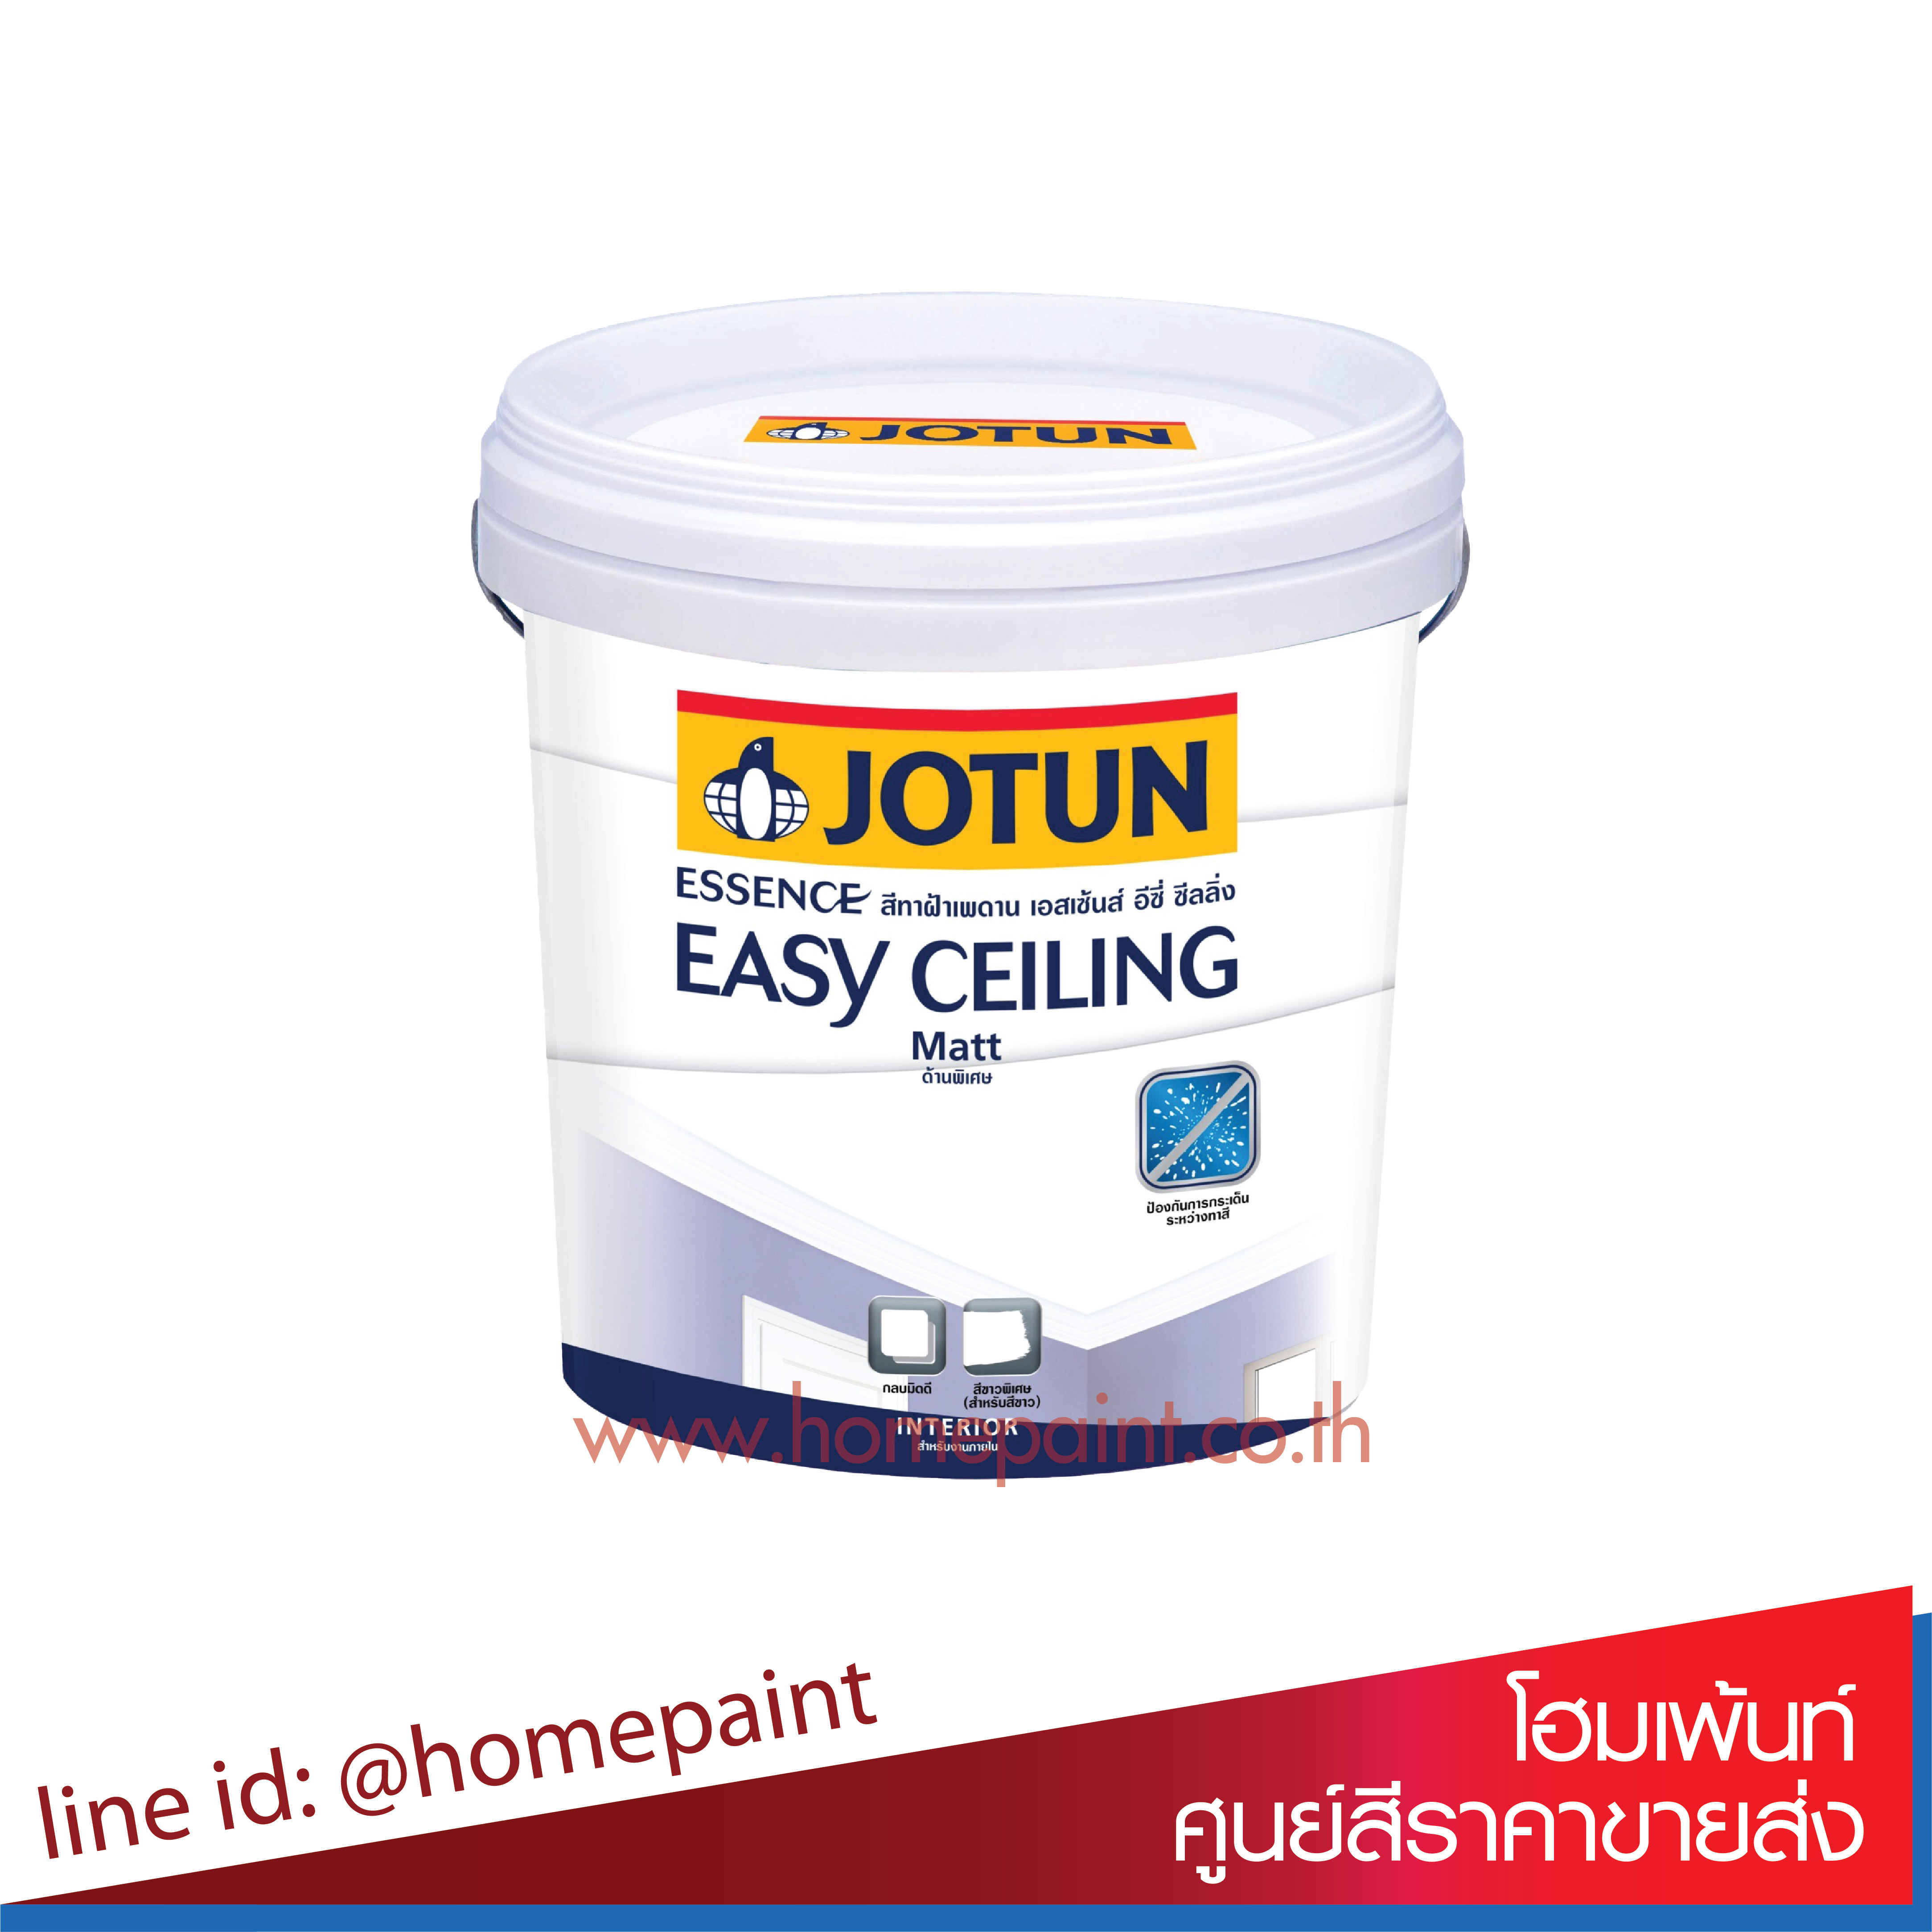 โจตัน เอสเซ้นส์ อีซี่ ซีลลิ่ง สีทาฝ้าเพดาน สีขาว / Jotun Essence Easy Ceiling Matt